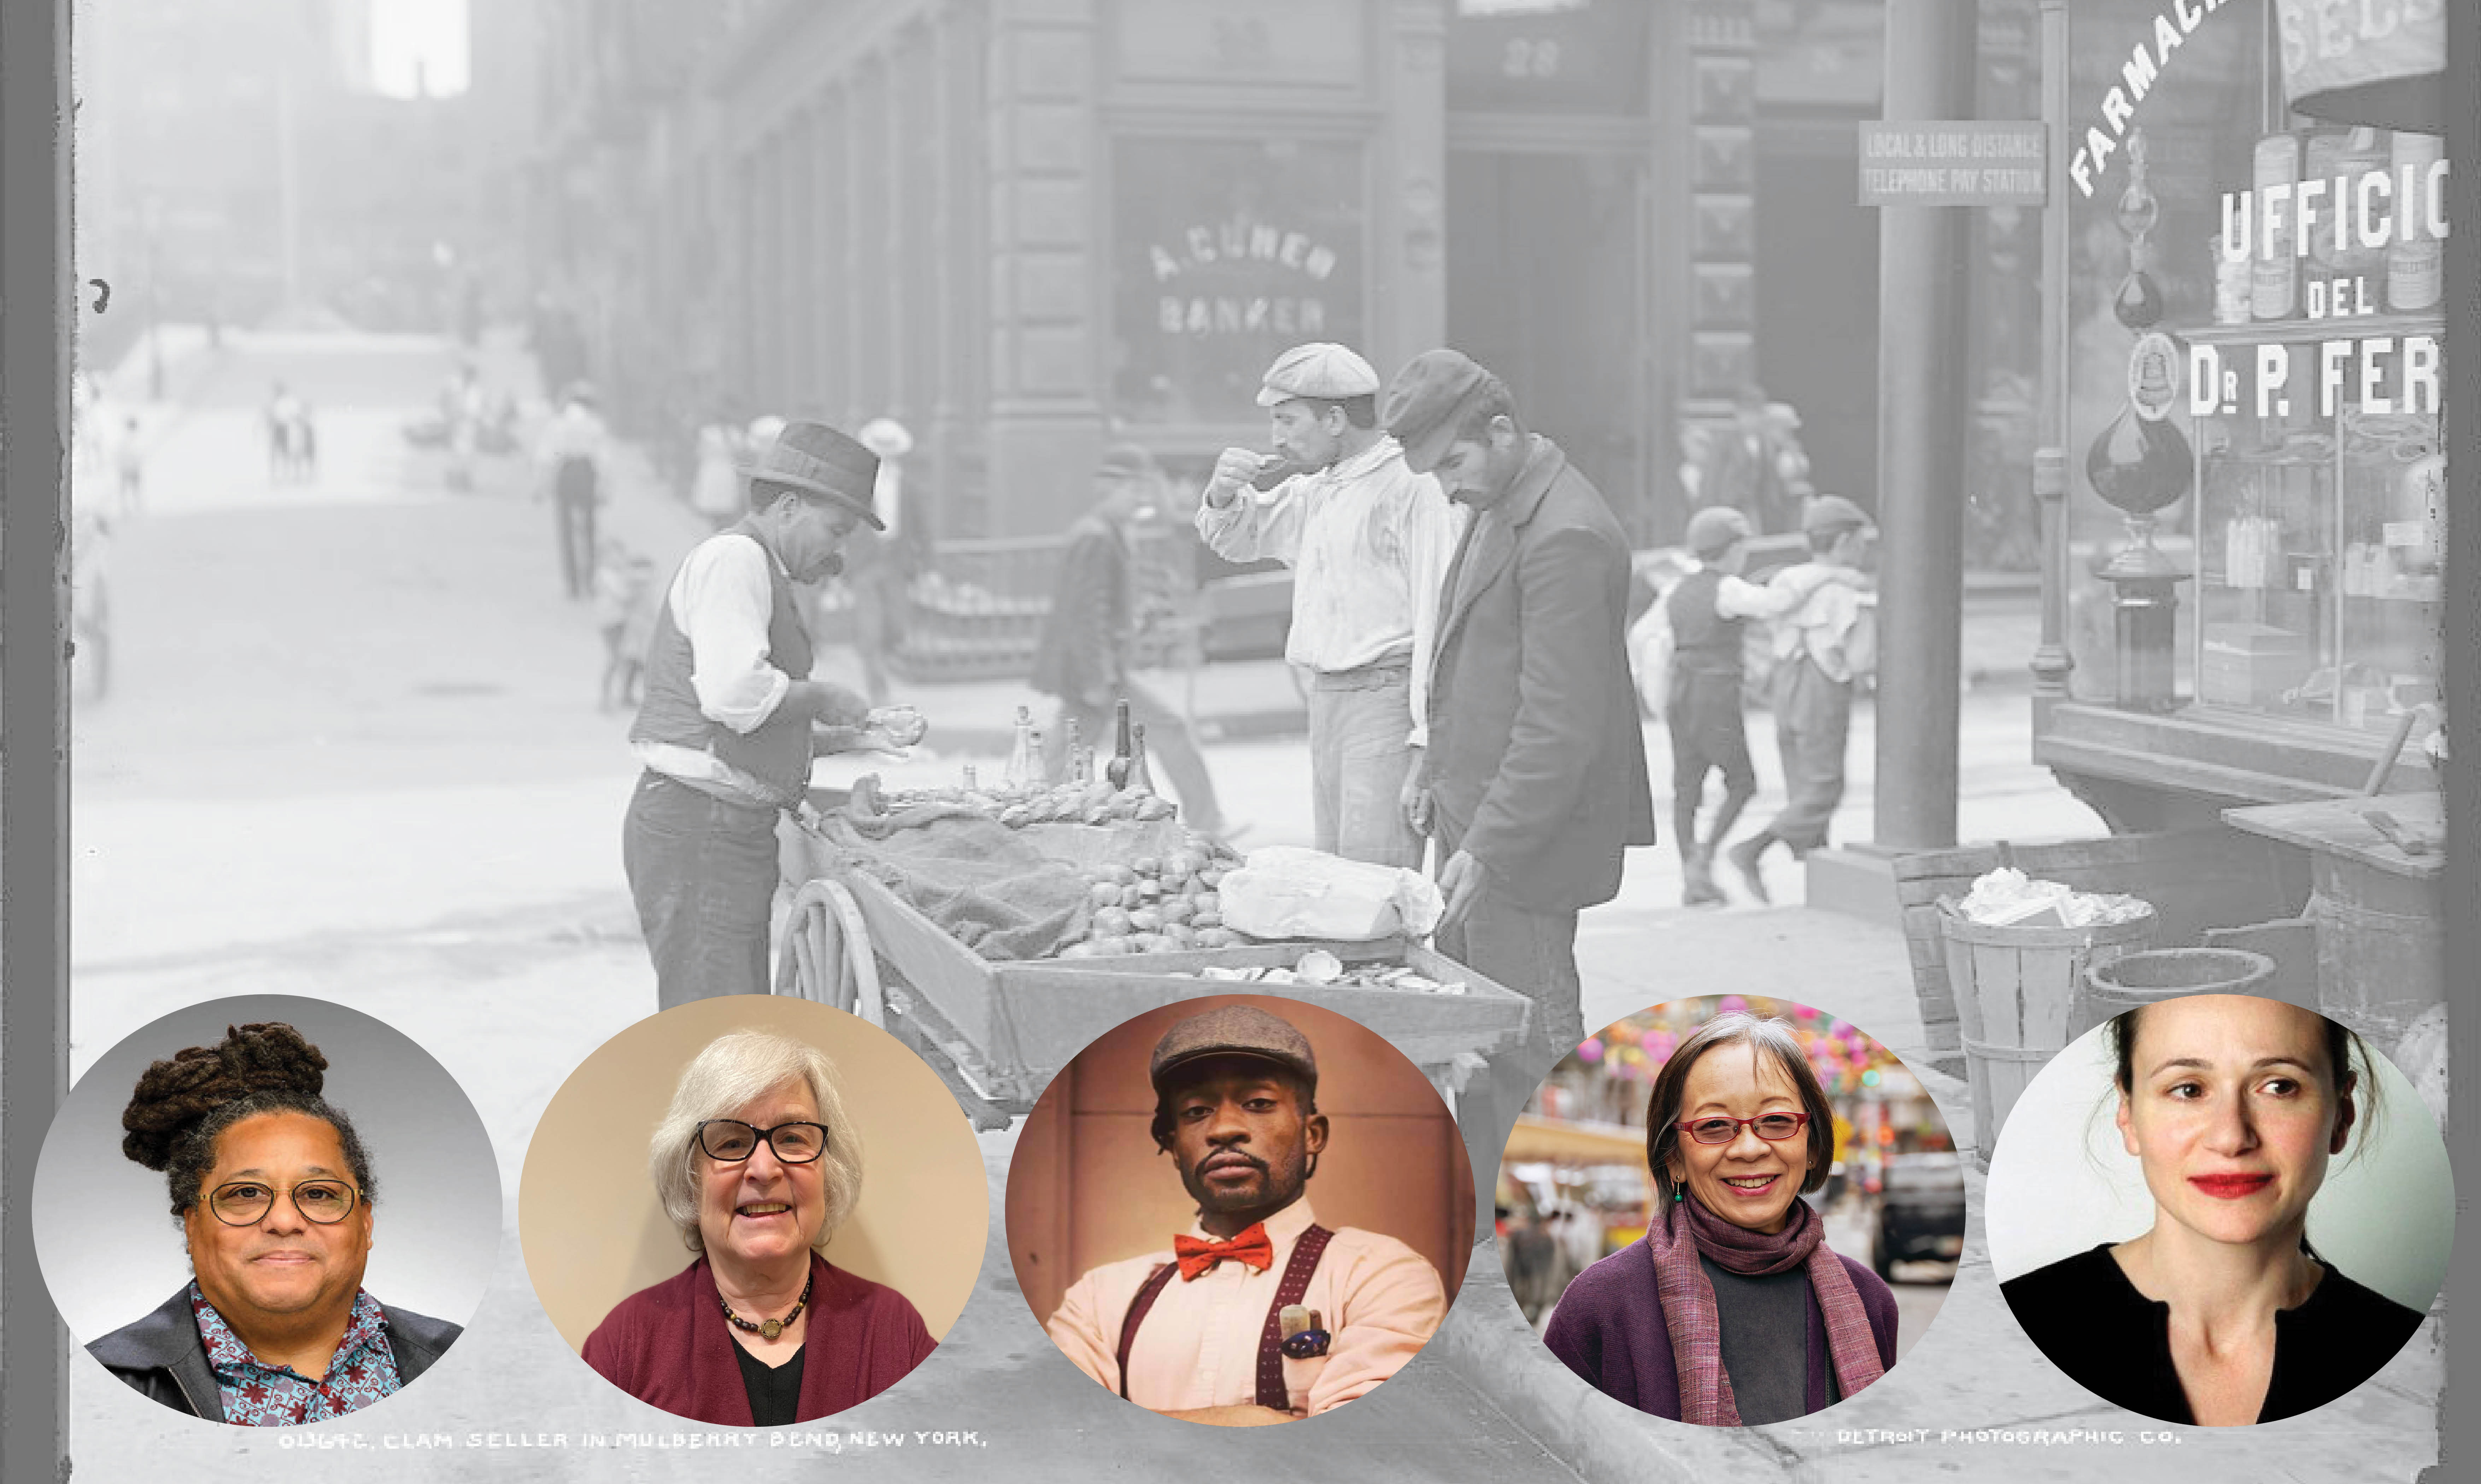 Al fondo, una foto de un vendedor de almejas en Mulberry Bend, Nueva York, en 1900. Hay cuatro hombres parados alrededor de un carro de almejas en la calle. En la parte inferior de la foto hay 5 disparos a la cabeza. De izquierda a derecha: Scott Barton, Hasia Diner, Ben Harney, Grace Young y Julia Moskin.